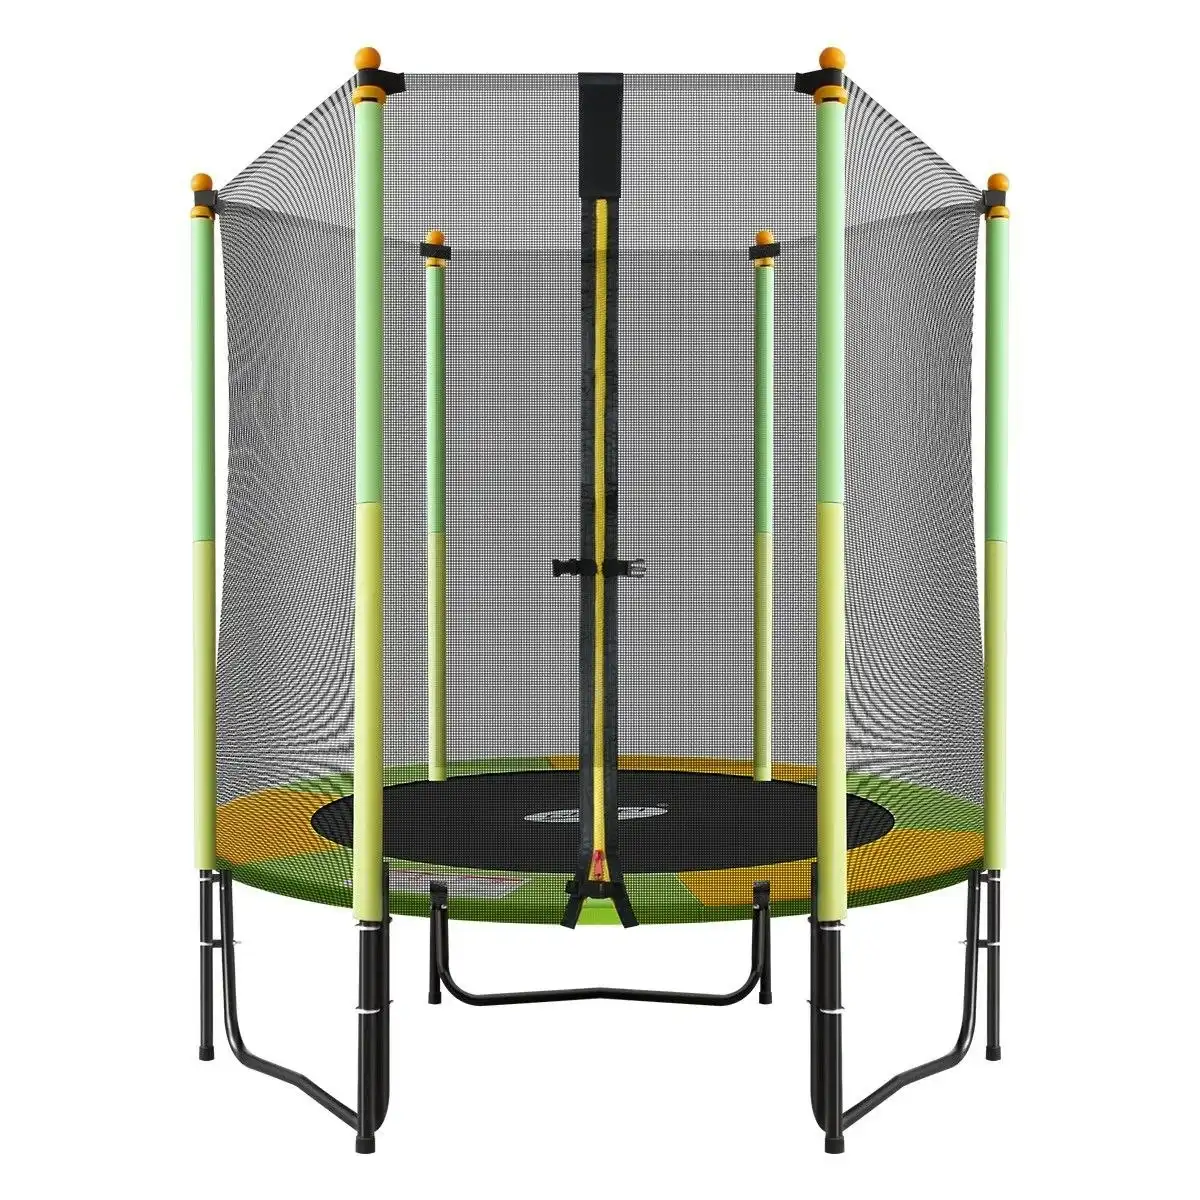 Genki  55 inch  Round Outdoor Indoor Mini Trampoline with Safety Enclosure 80KG